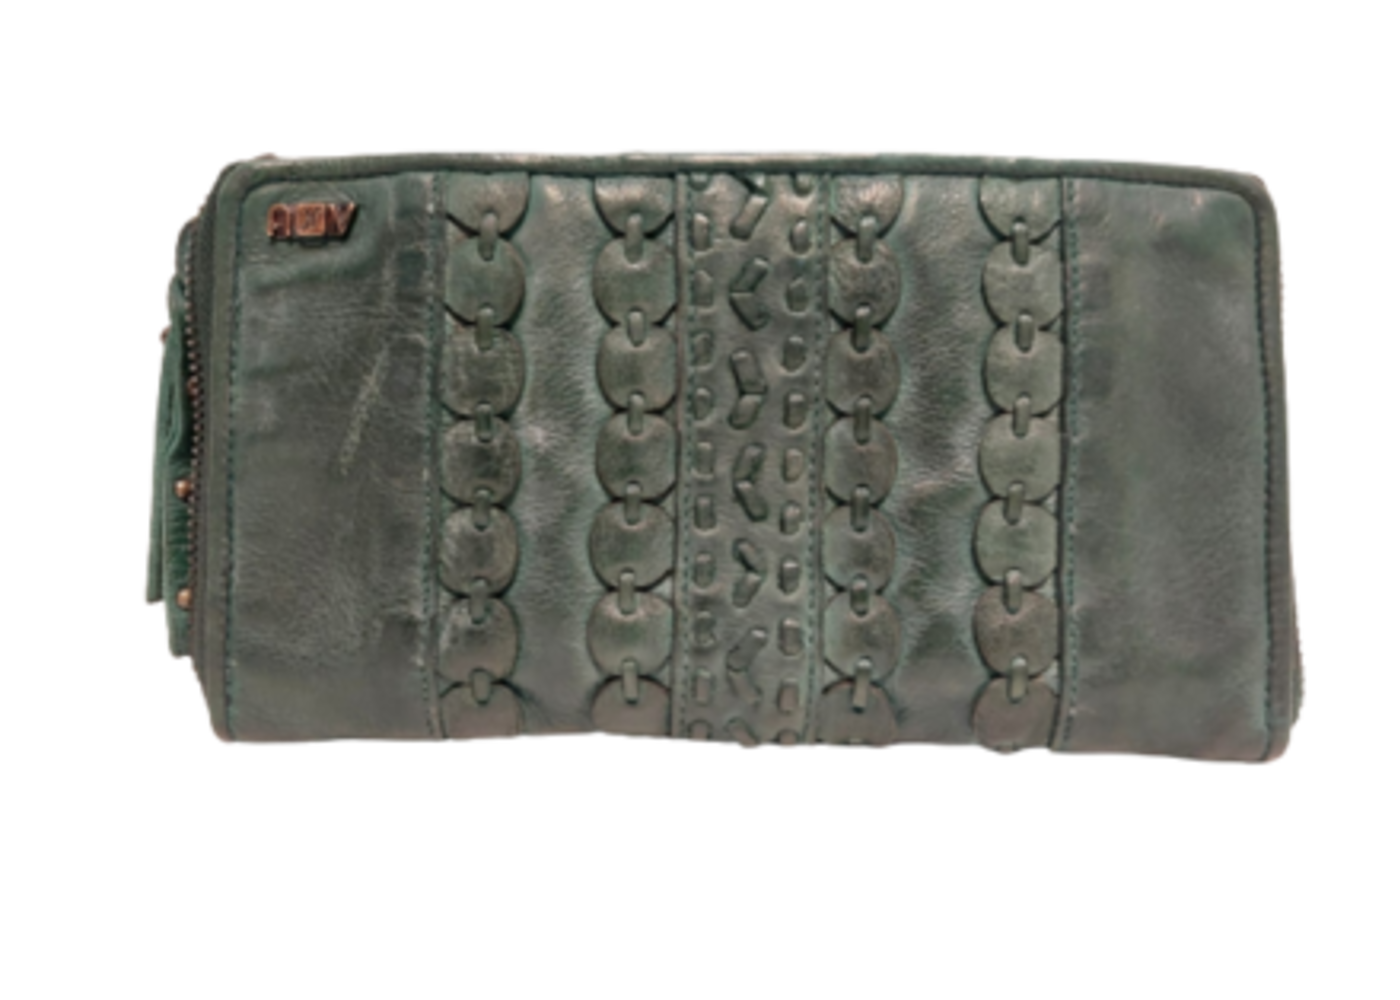 Art n Vintage Sandy zip wallet